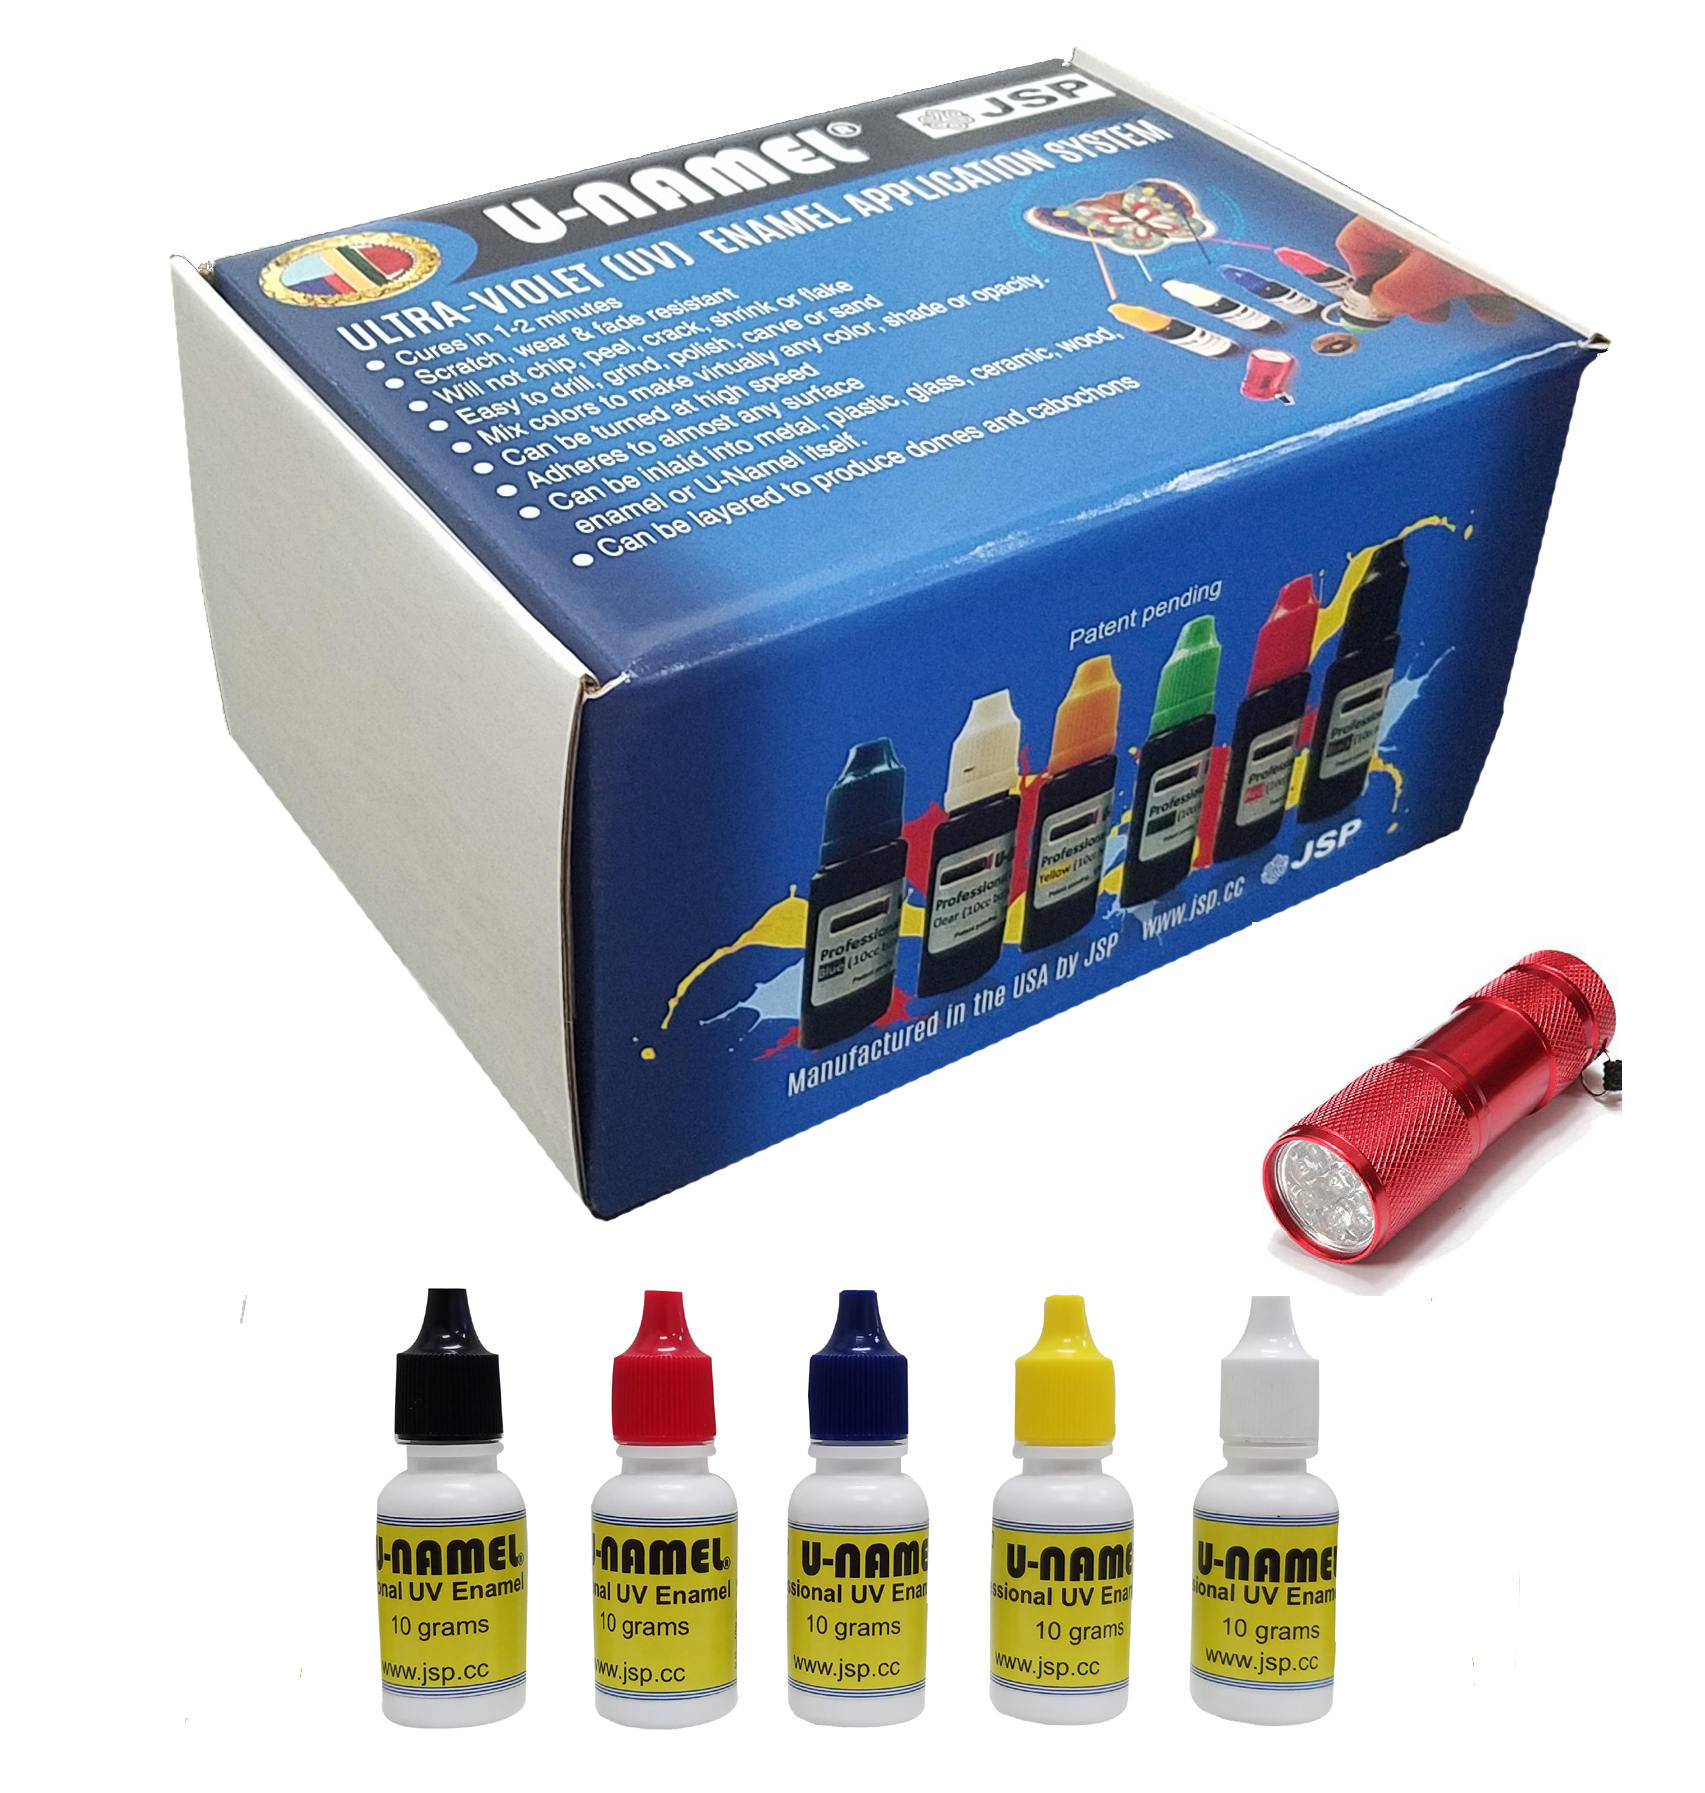 U-NAMEL® starter kit, 5 colors + led - Click Image to Close